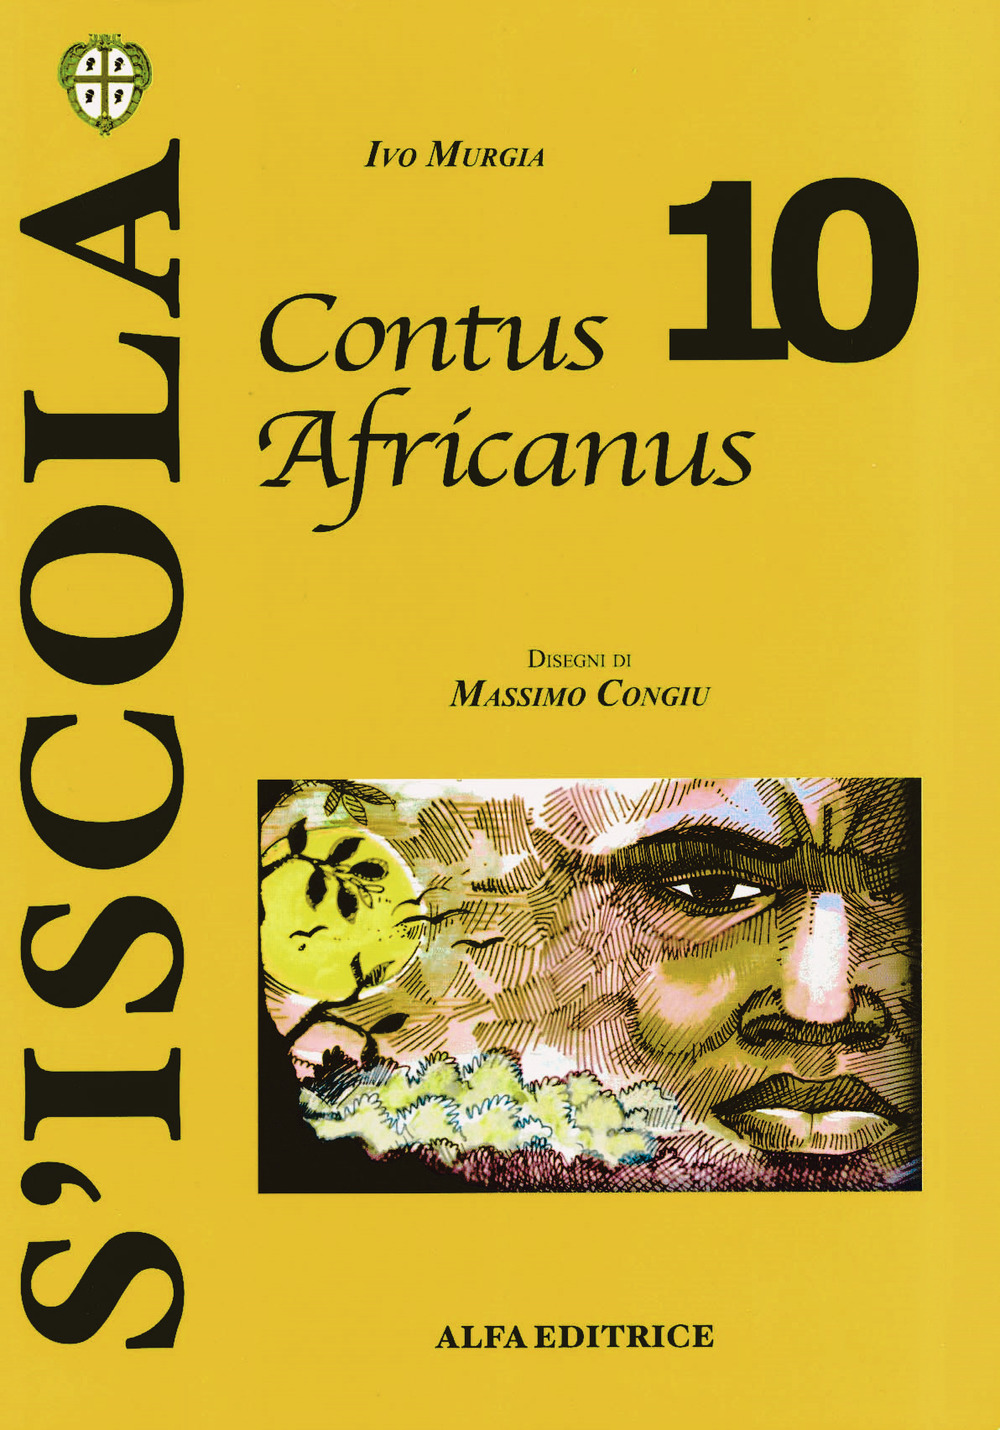 Contus africanus